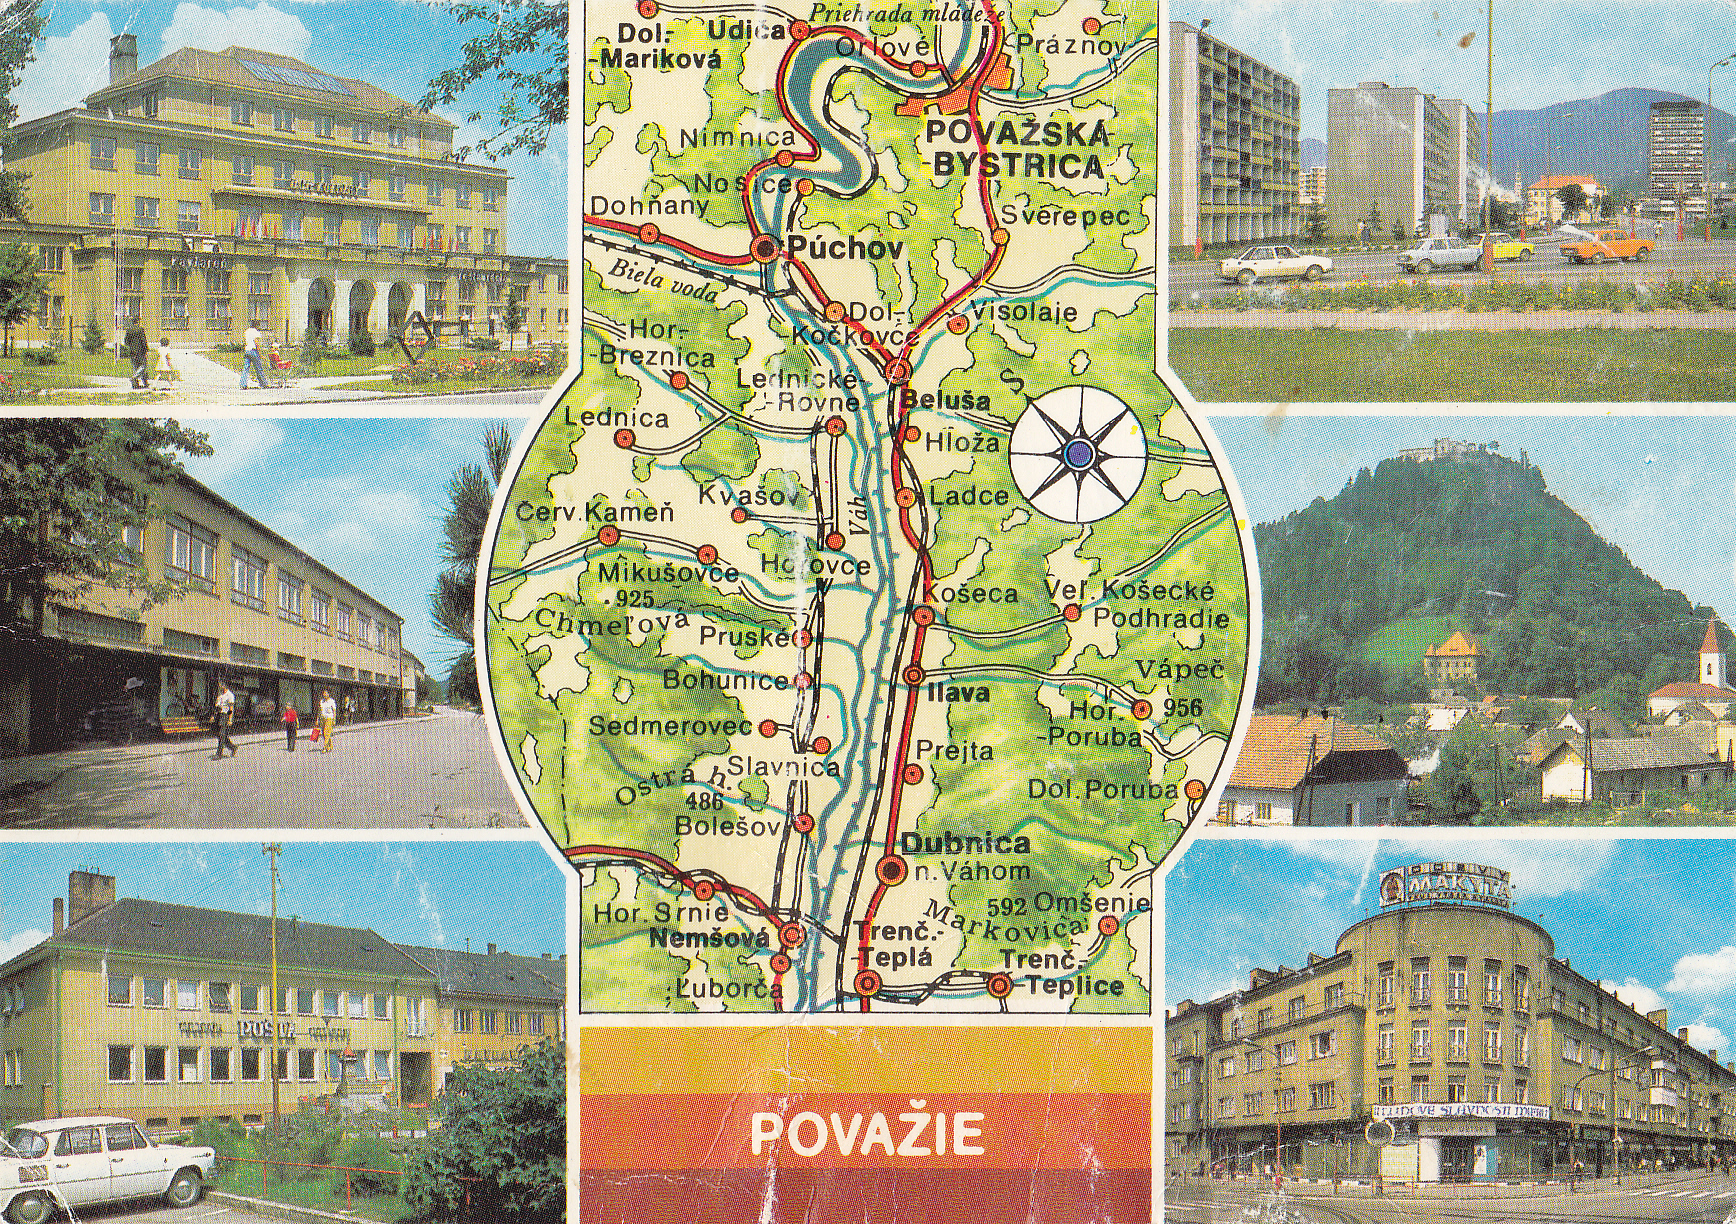 Stredné Považie na pohľadnici (Pov. Bystrica, Púchov, Ilava, Dubnica n. Váhom)